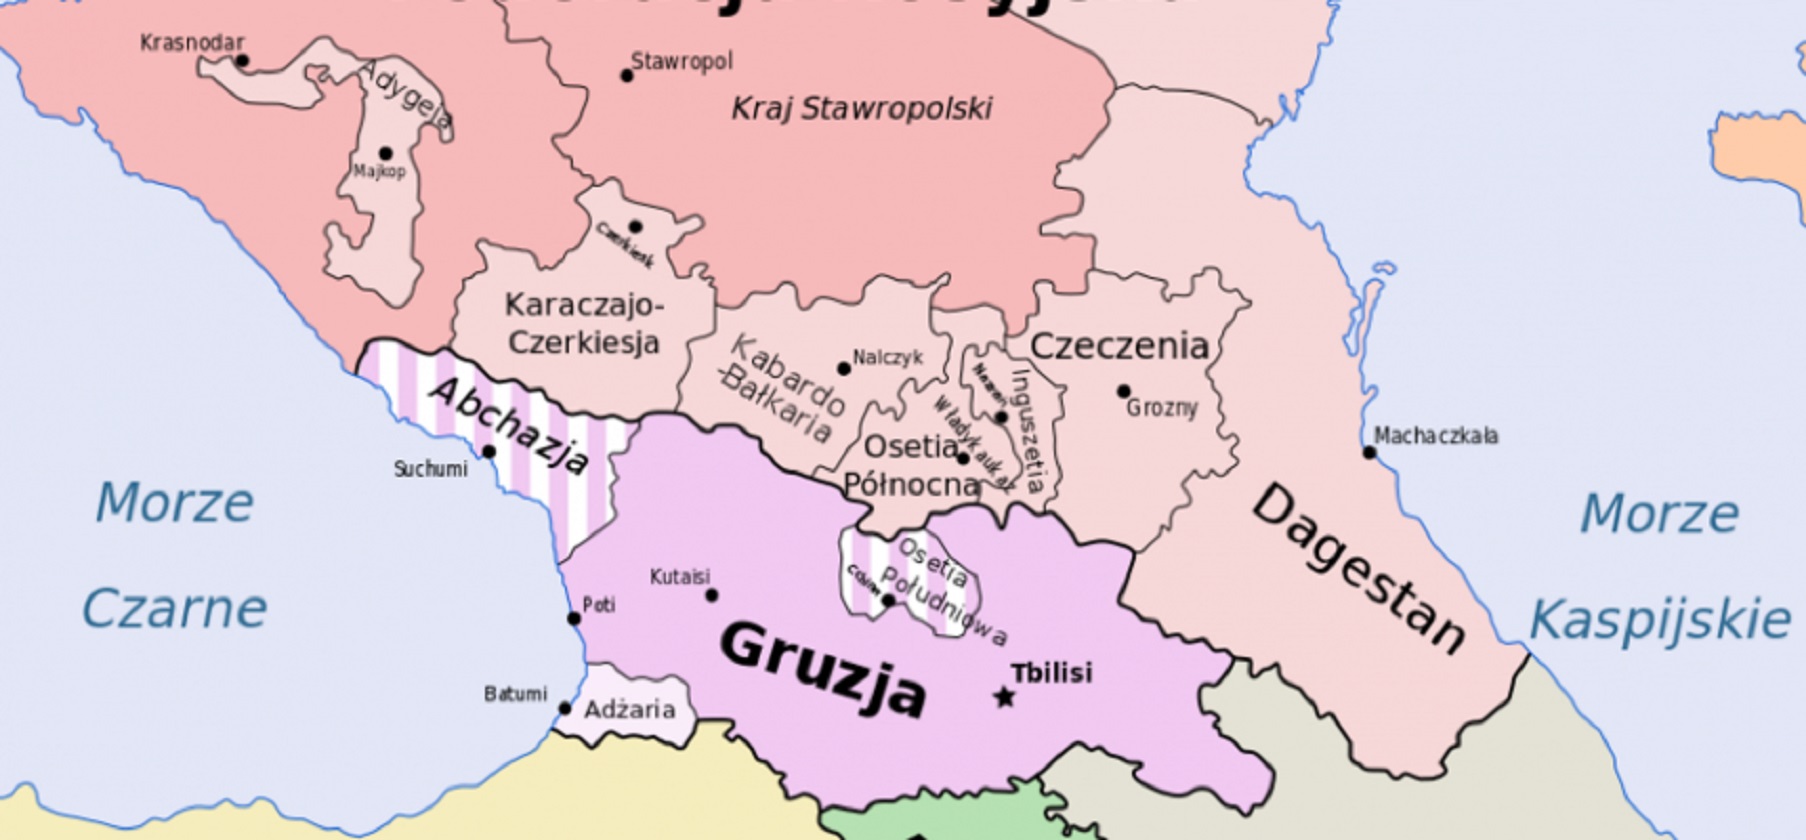 Политическая карта закавказских республик